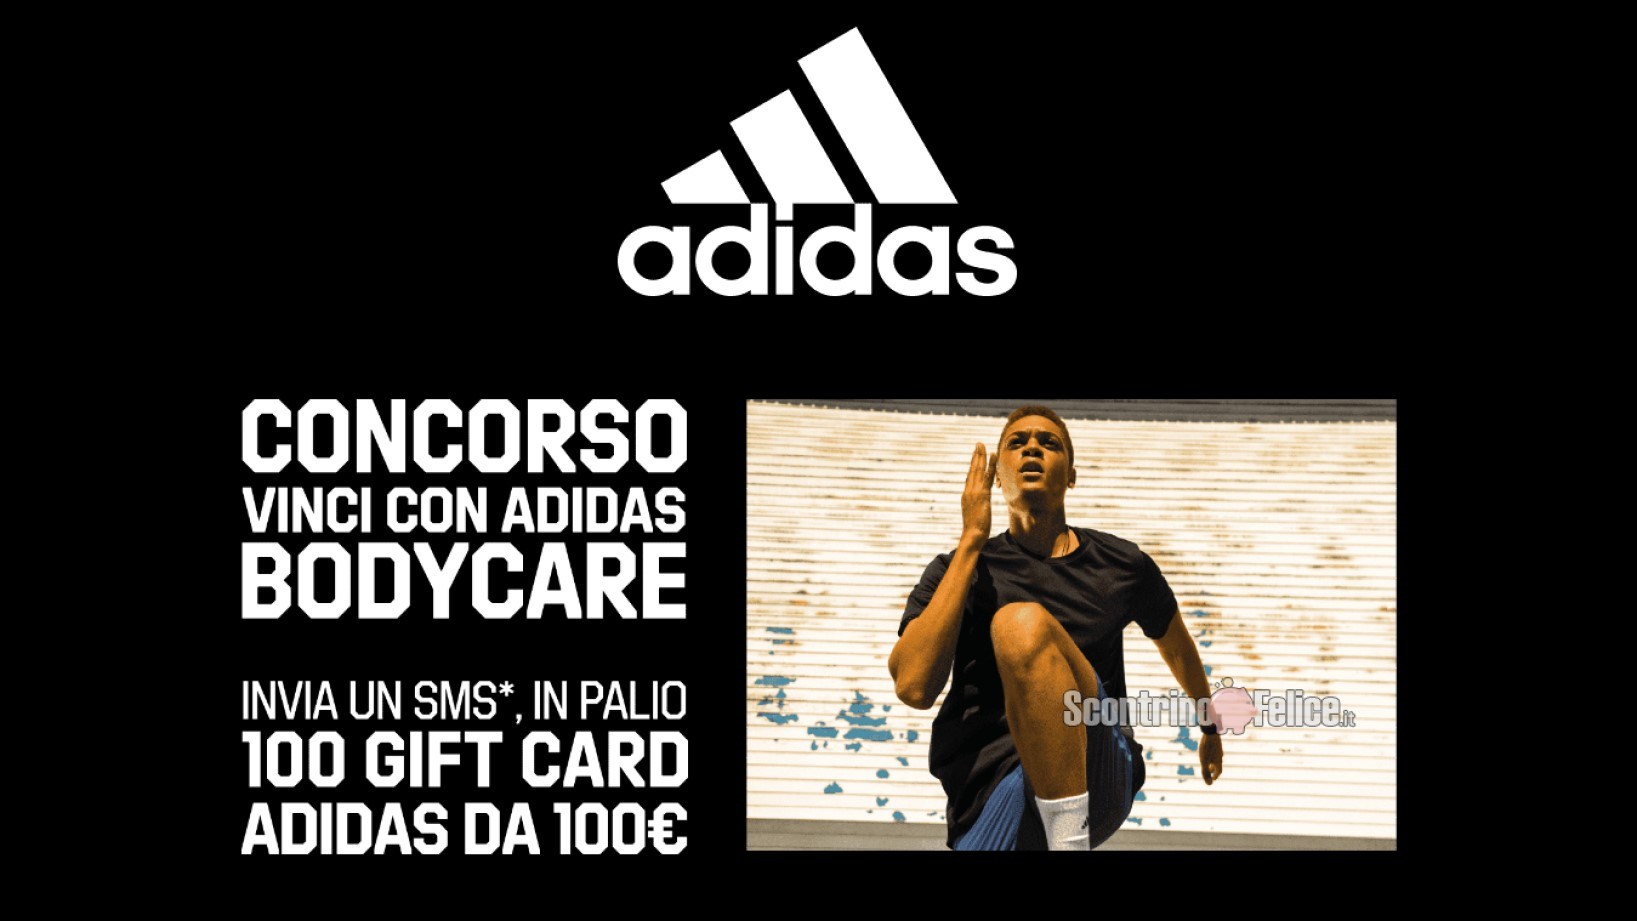 Concorso "Vinci con Adidas Bodycare": in palio 100 gift card digitali Adidas da 100 euro